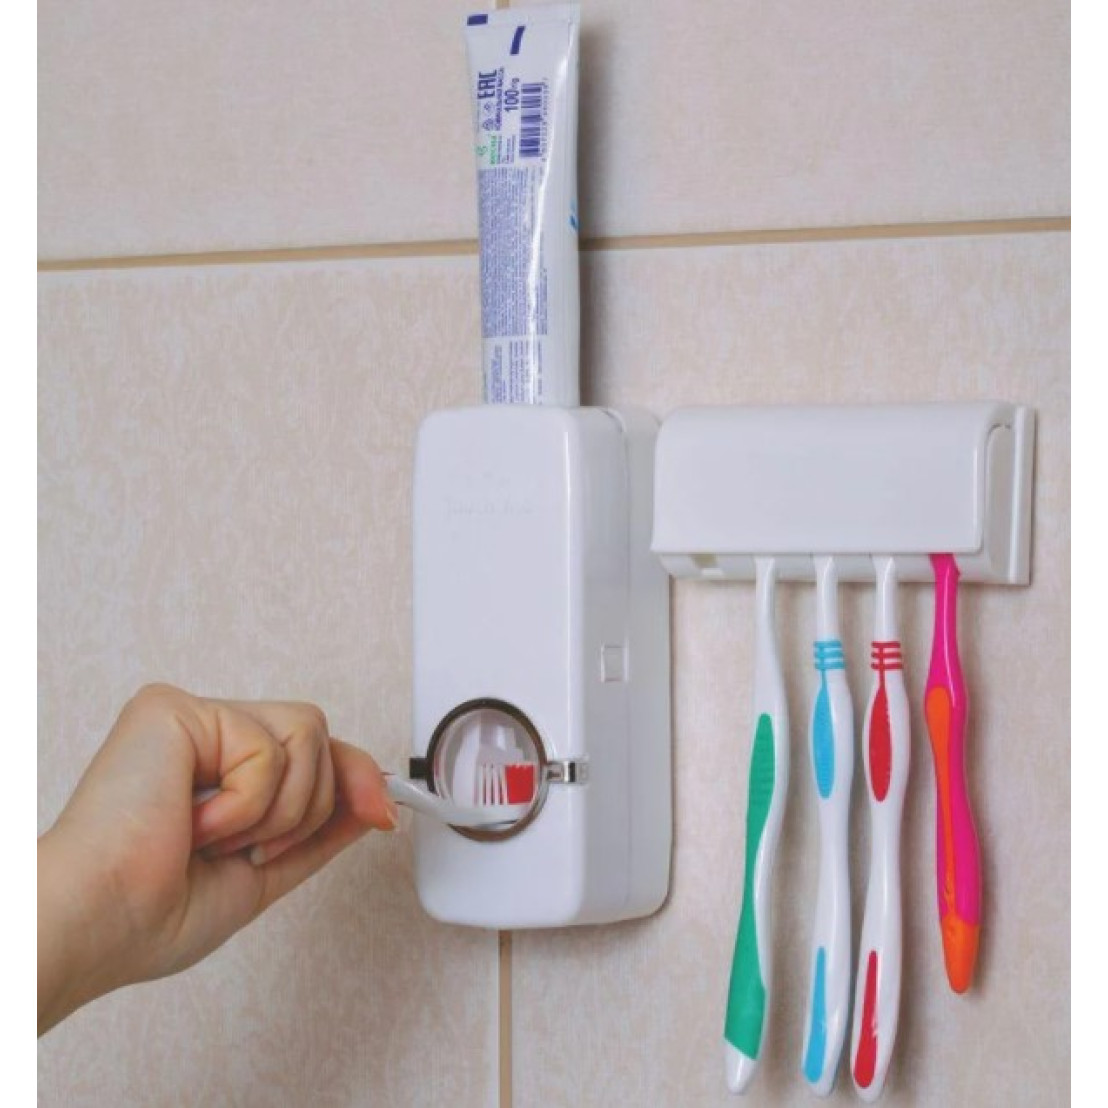 Дозатор пасты купить. RZ-699 автоматический дозатор для зубной пасты. Держатель зубных щеток RAINBOWL Cube 2739-1. Выдавливалка зубной пасты автоматическая. Держатель для зубных щеток и пасты 3 яруса d-5118.